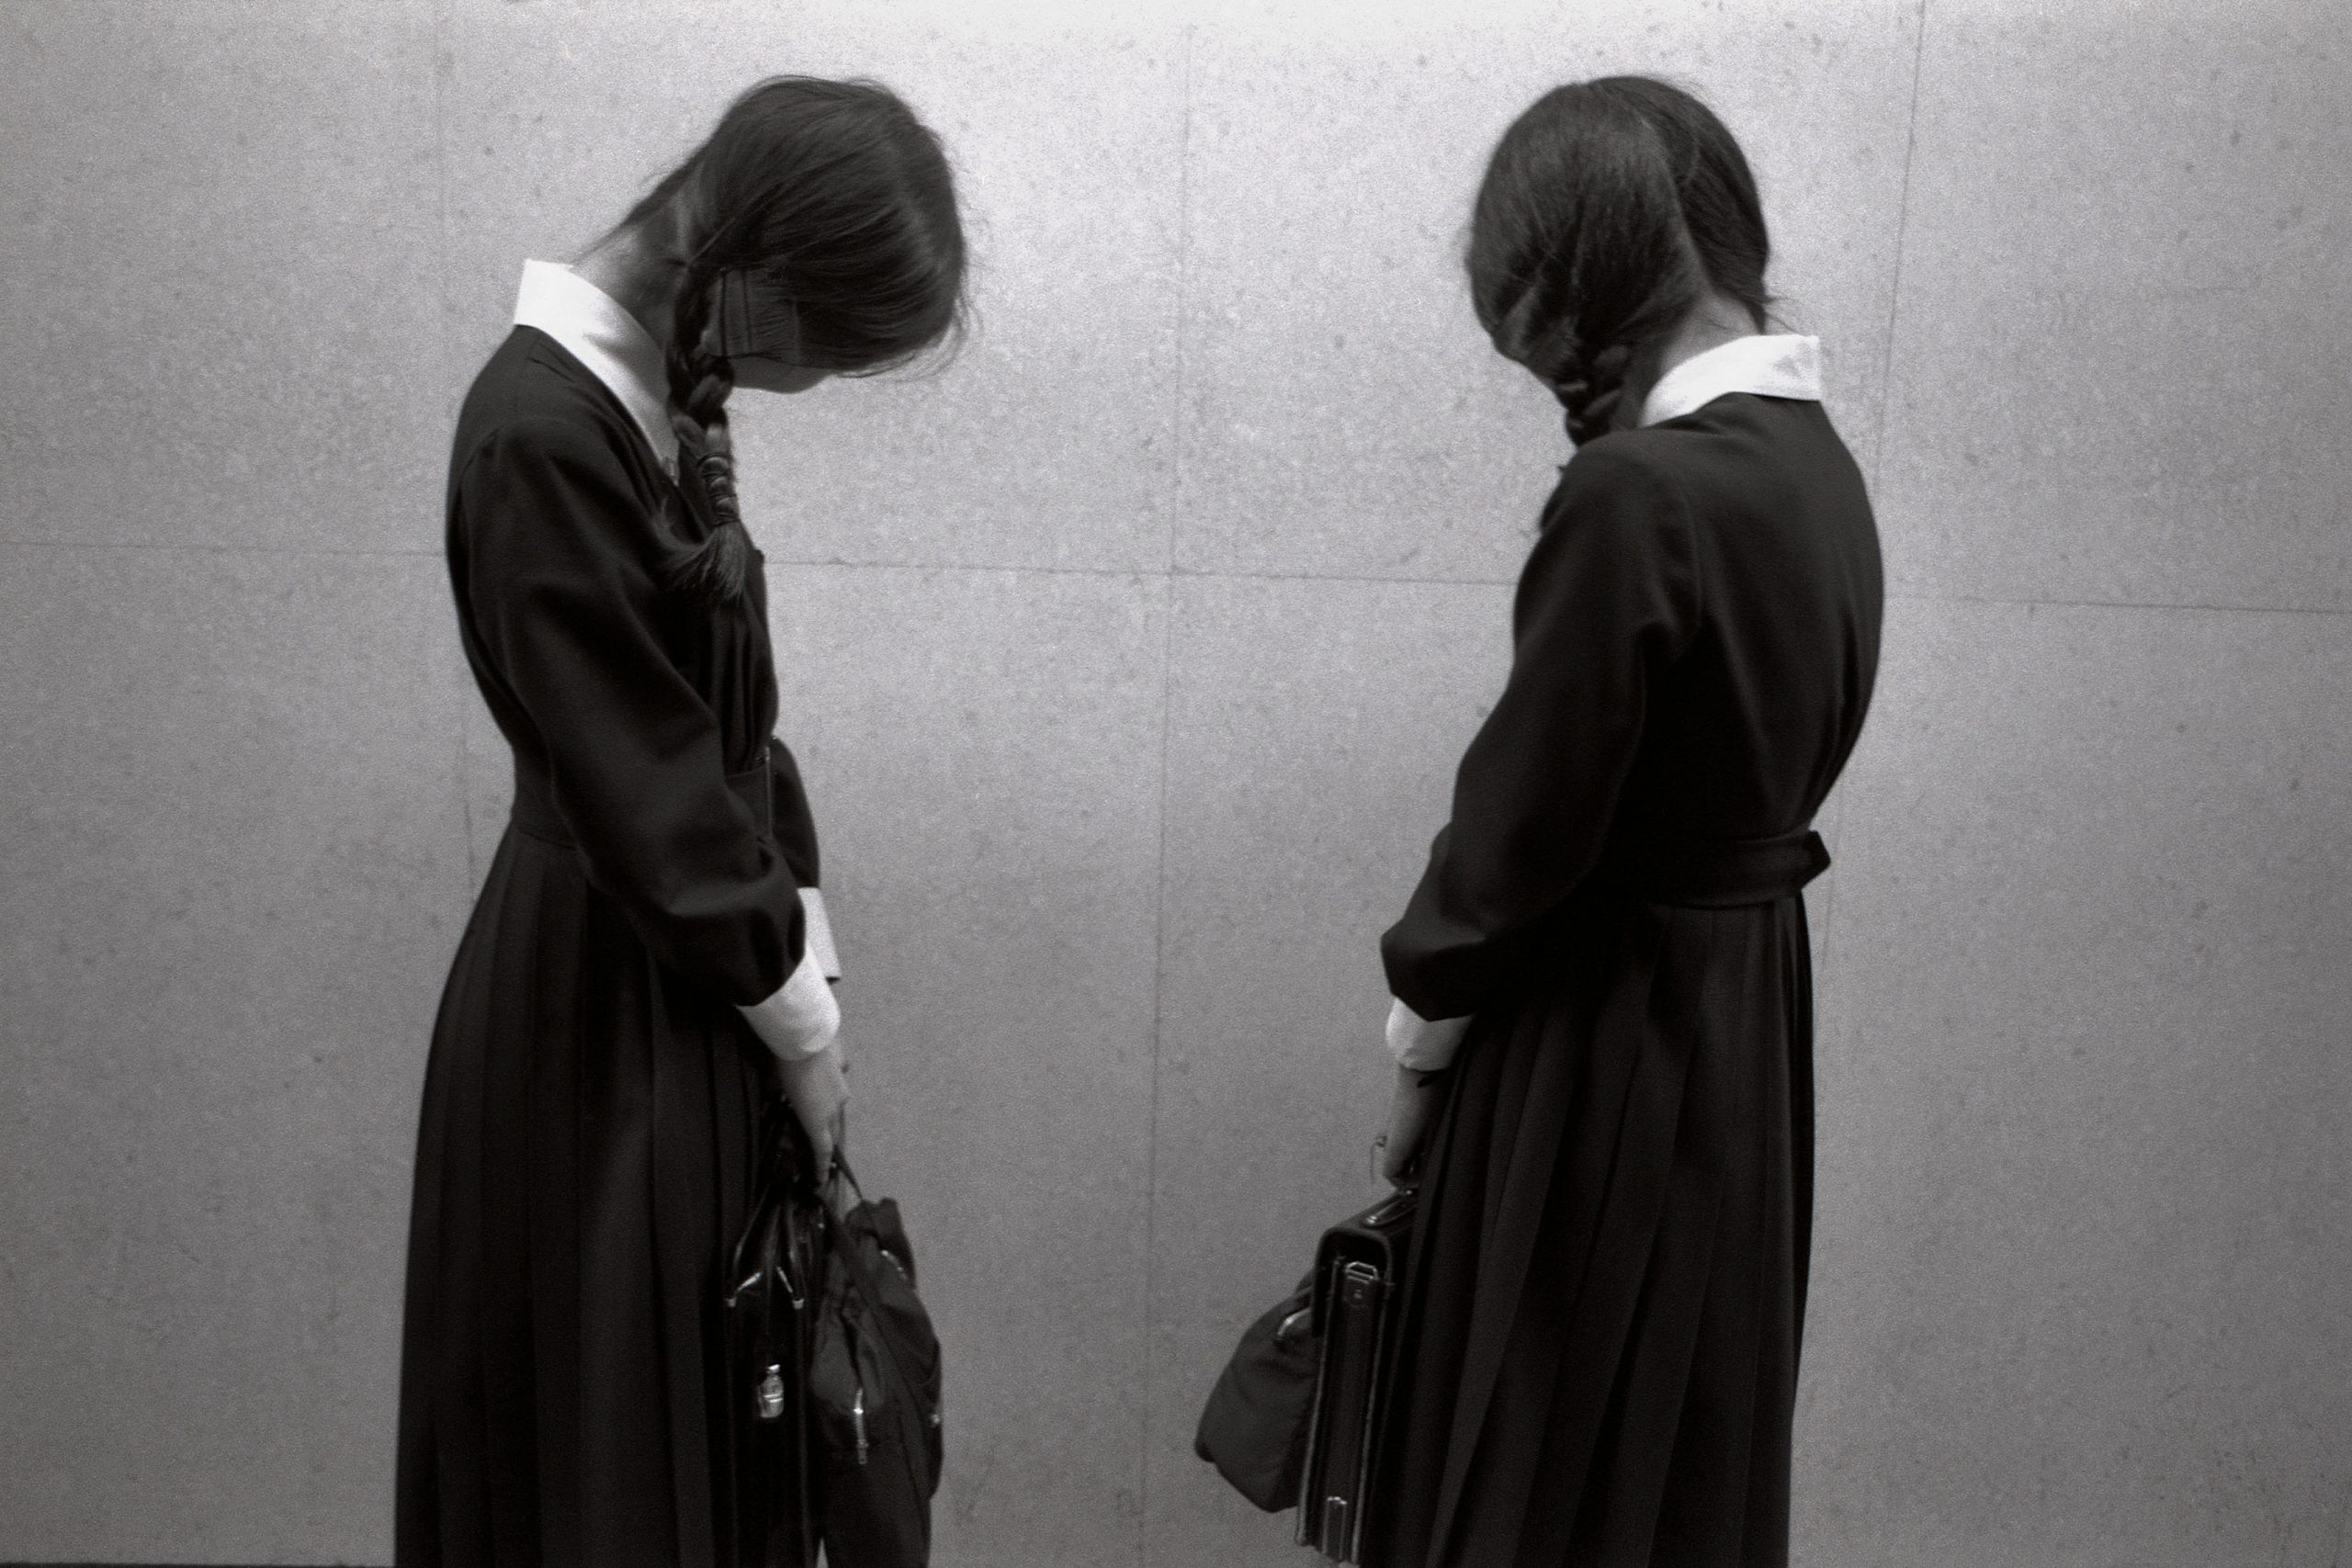 Two Schoolgirls, 1976